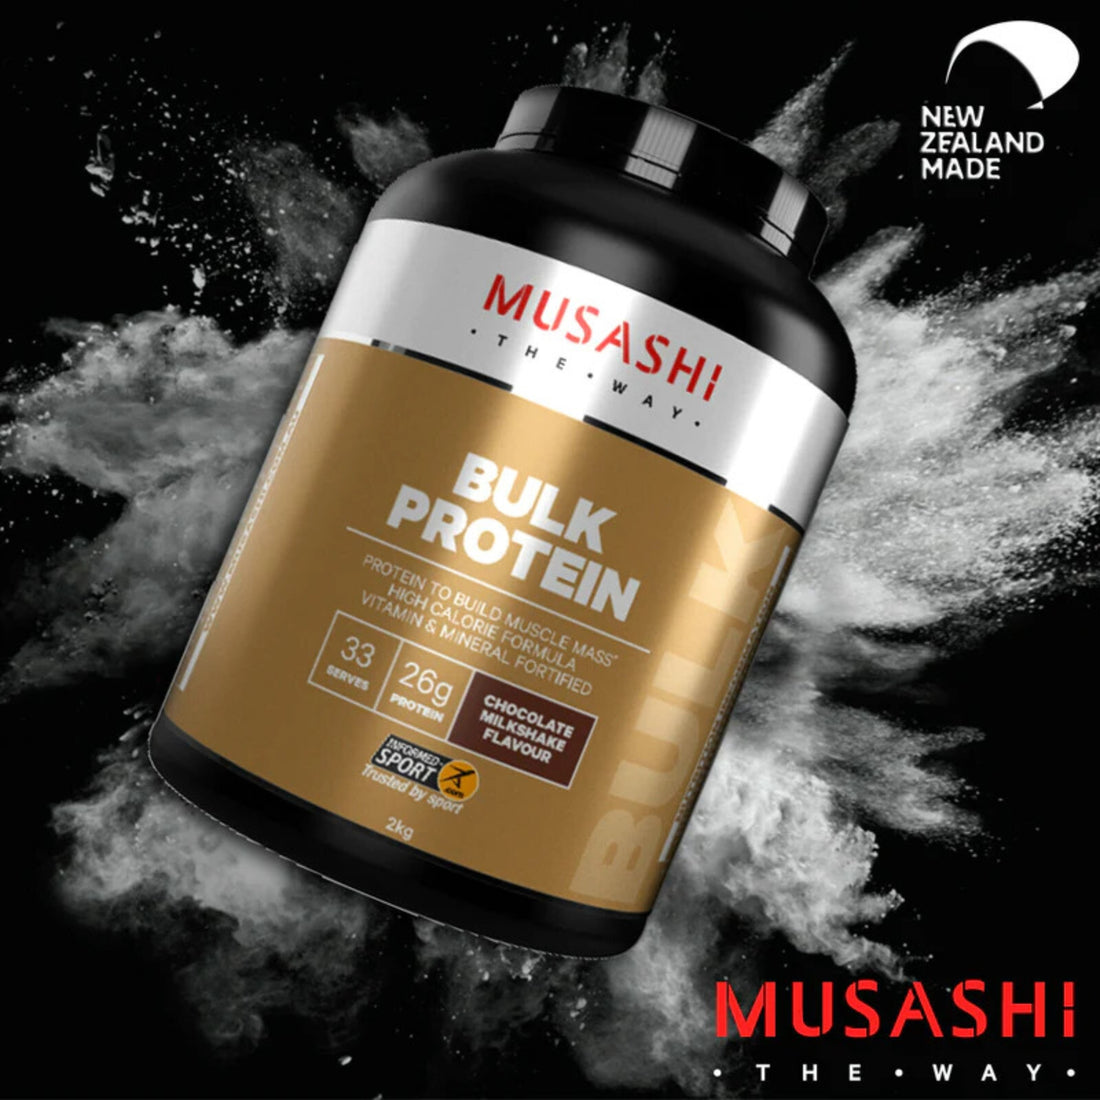 Musashi Bulk Protein Lifestyle